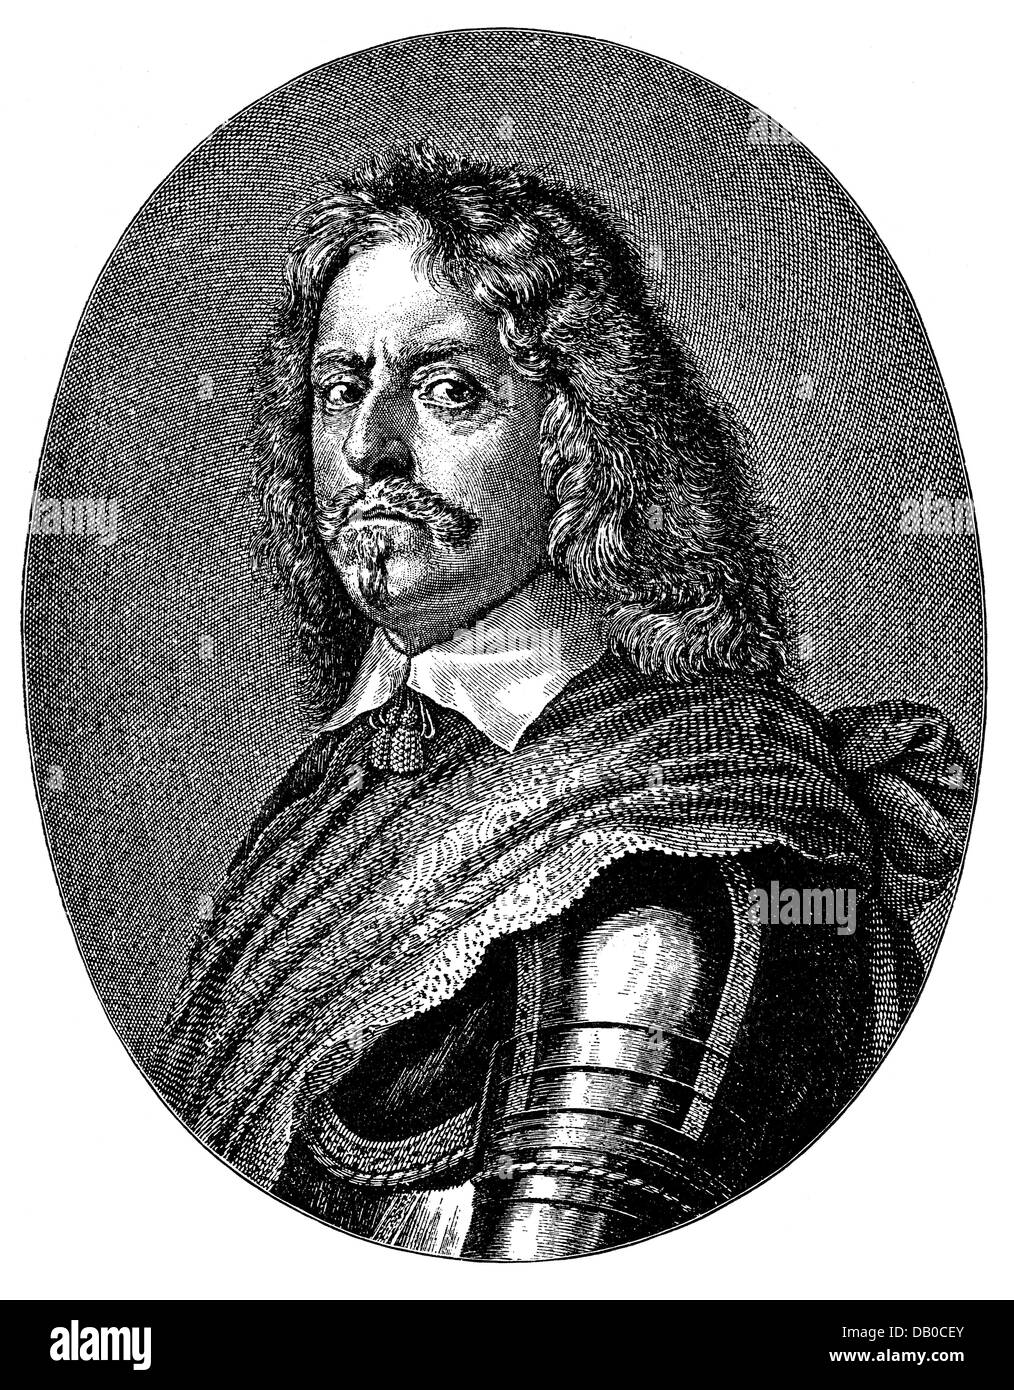 Koenigsmarck, Hans Christopher comte von, 4.3.1600 - 8.3.1663, général suédois, portrait, gravure sur cuivre de Falck, 17e siècle, l'artiste n'a pas d'auteur pour être effacé Banque D'Images